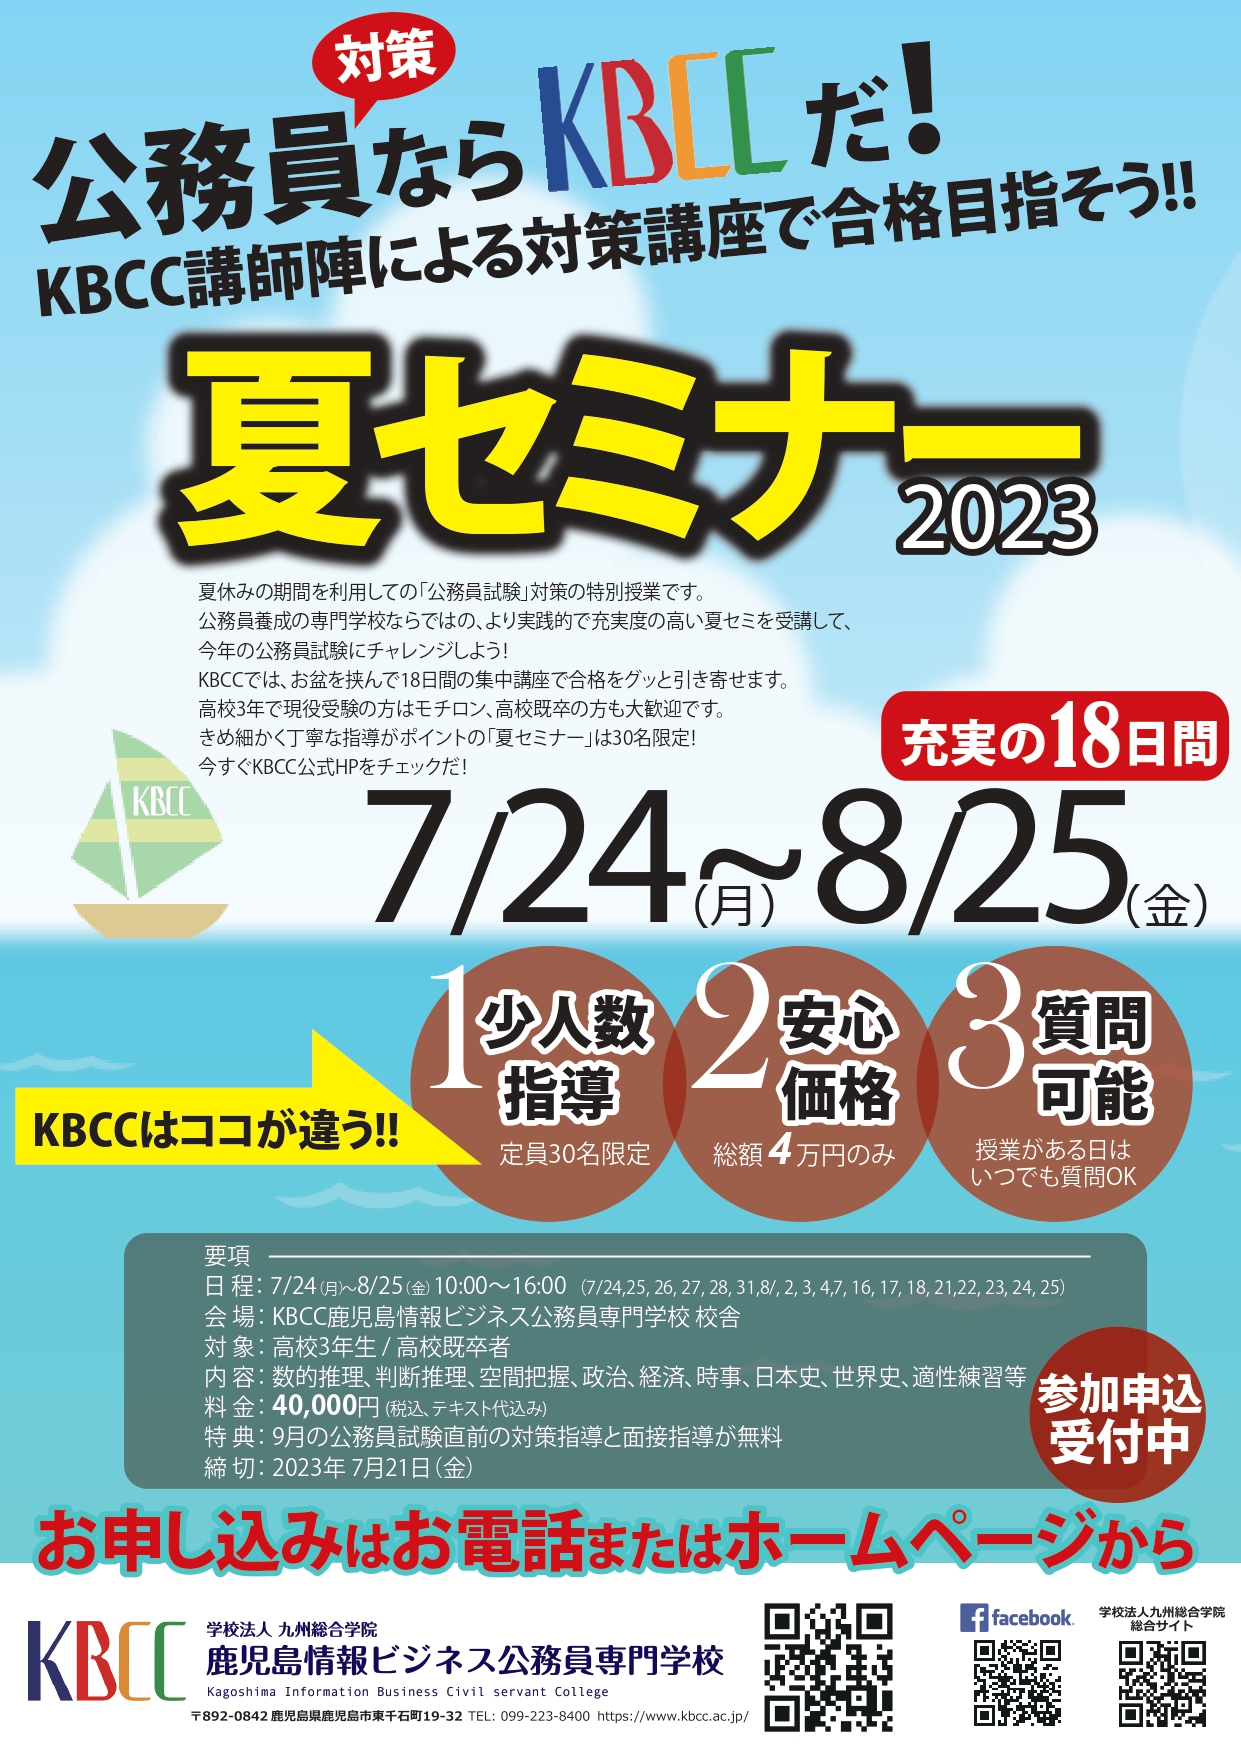 「KBCC公務員夏セミナー」を今年も開催いたします！